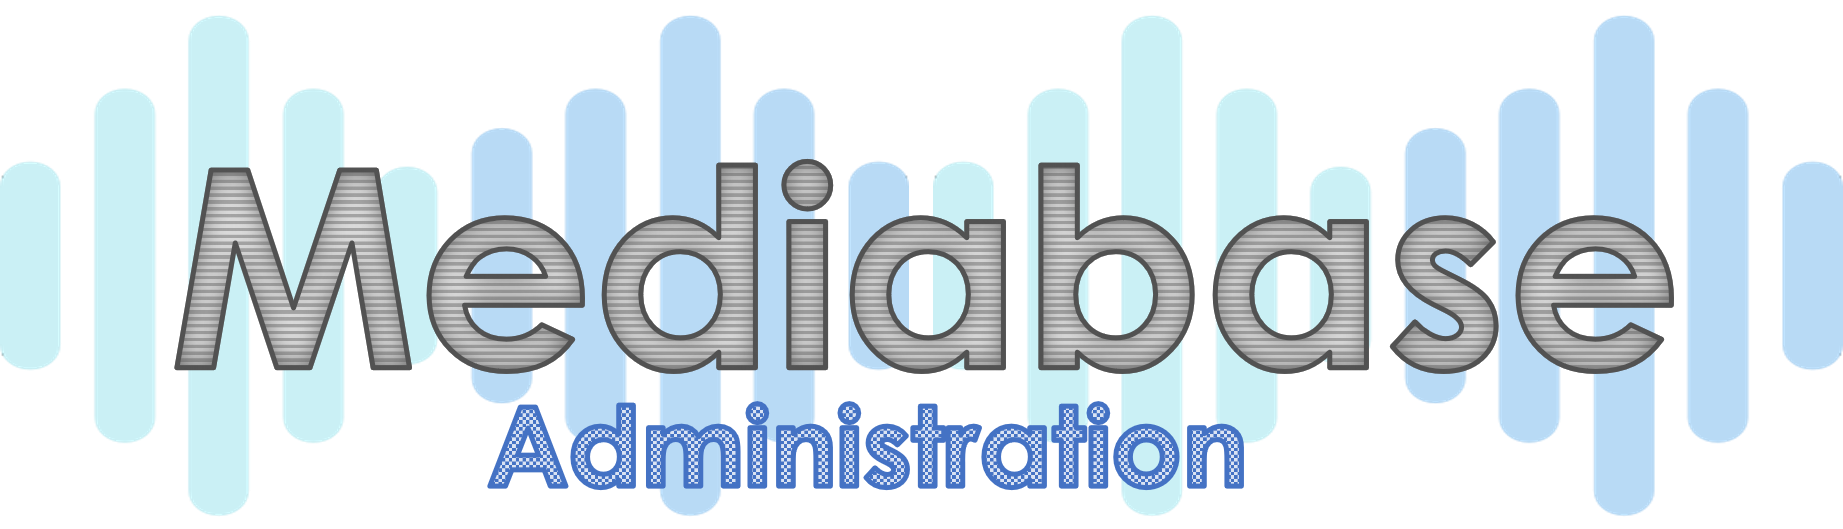 Mediabase Administration